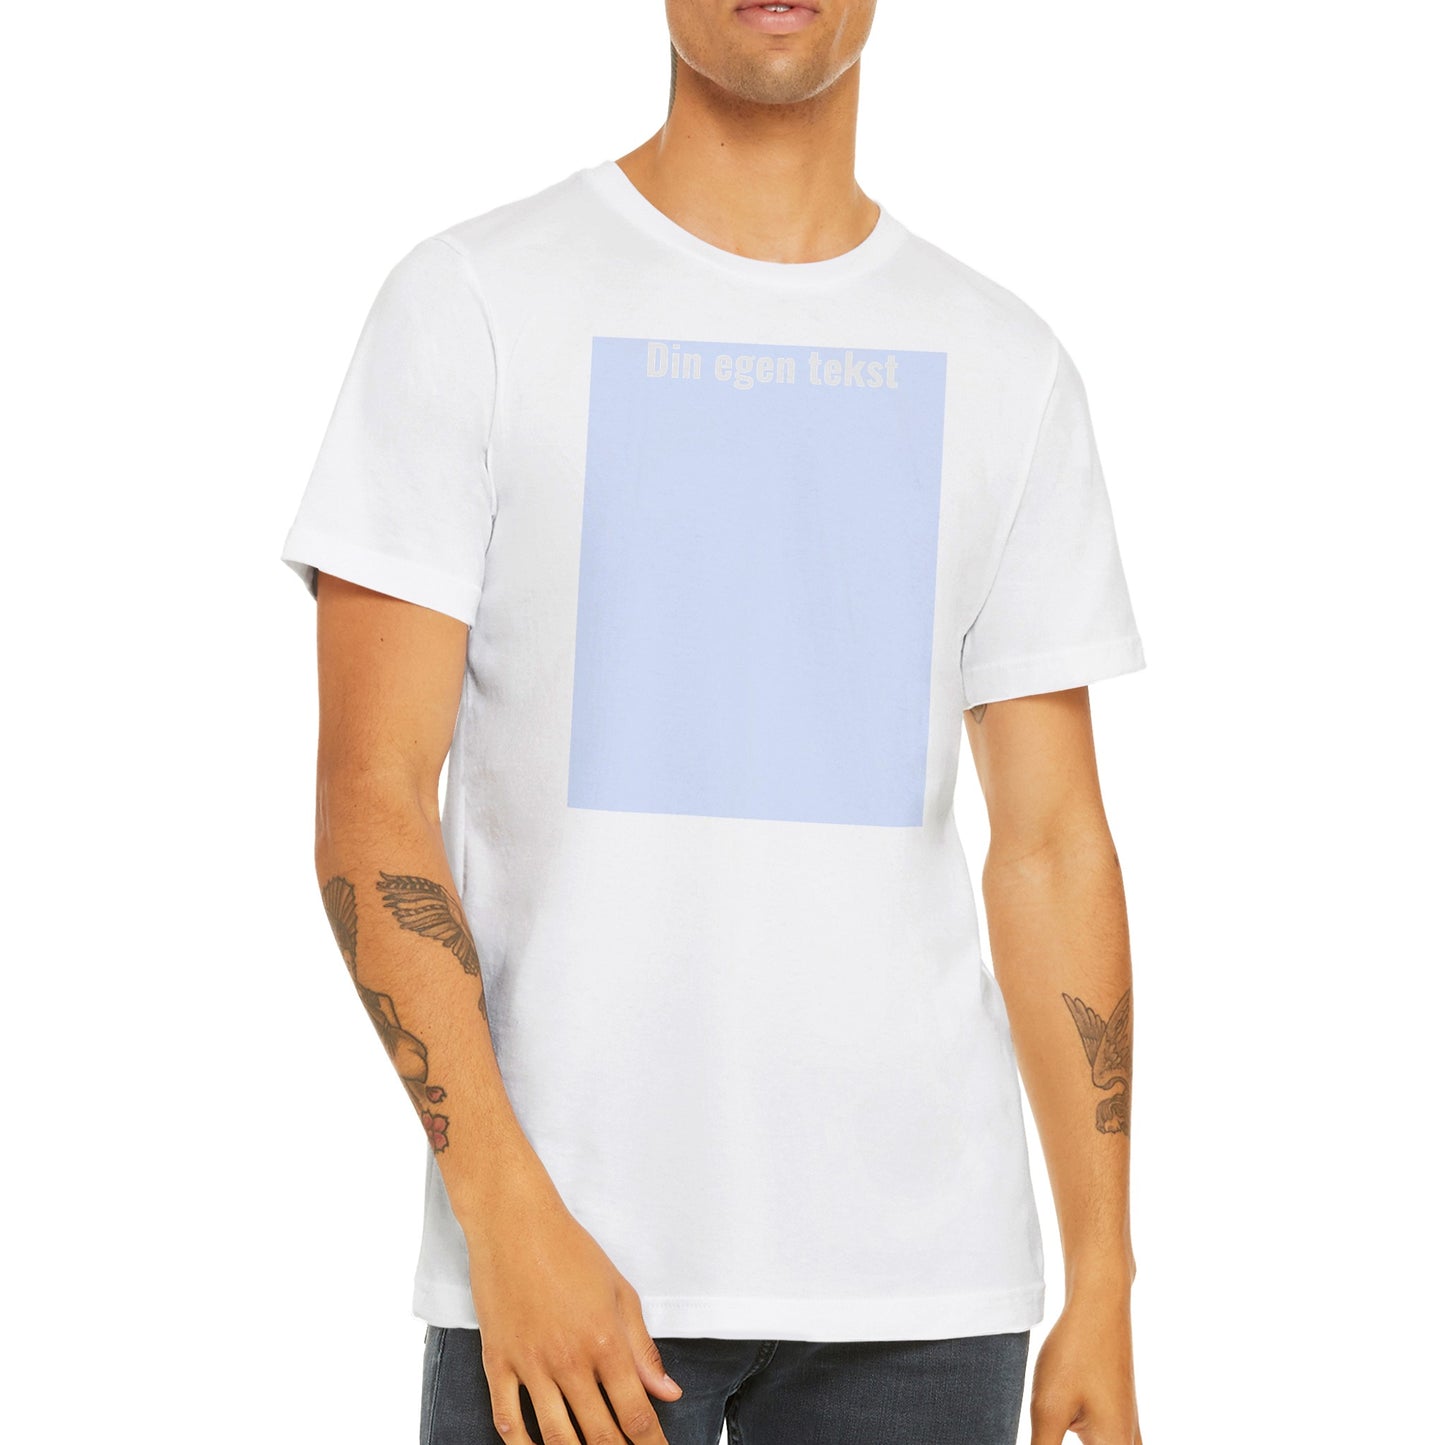 Design Selv T-shirt (billede eller (HVID) tekst ) Tattoveret mande iført  Premium Unisex hvid T-shirt  med tekst og billede boks på t-shirt